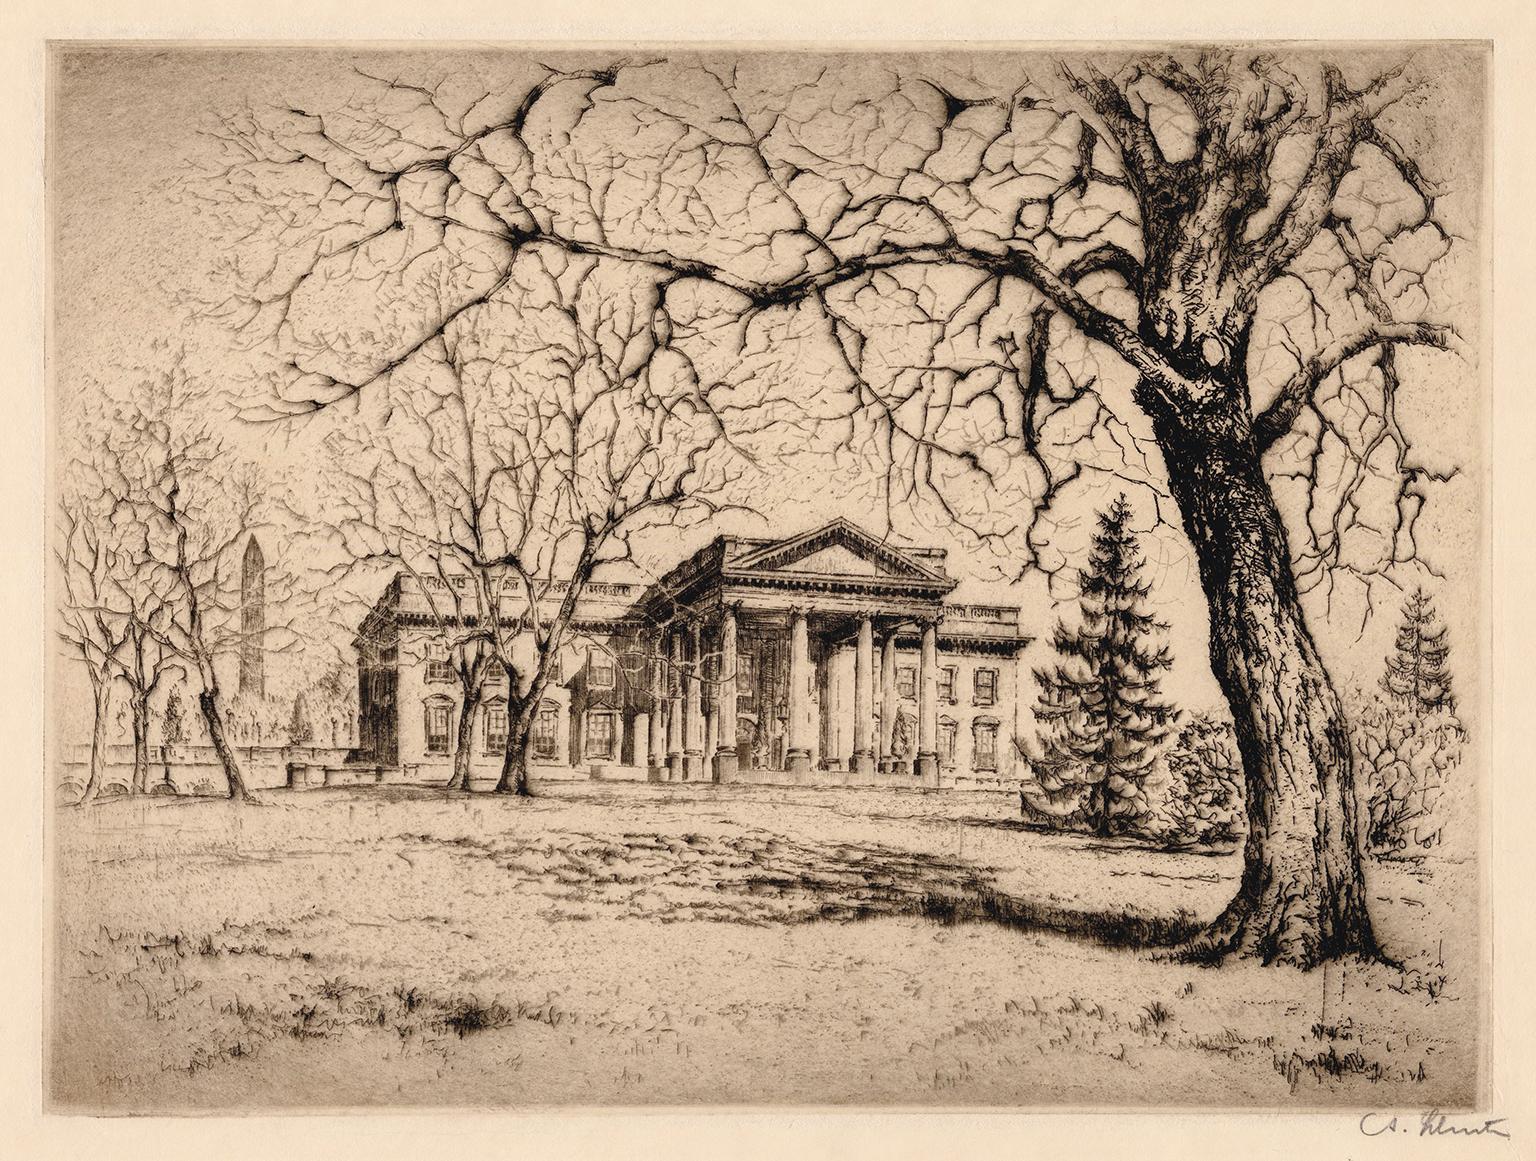 Landscape Print Anton Schutz - La Maison Blanche - Réalisme des années 1920, Washington D.C.